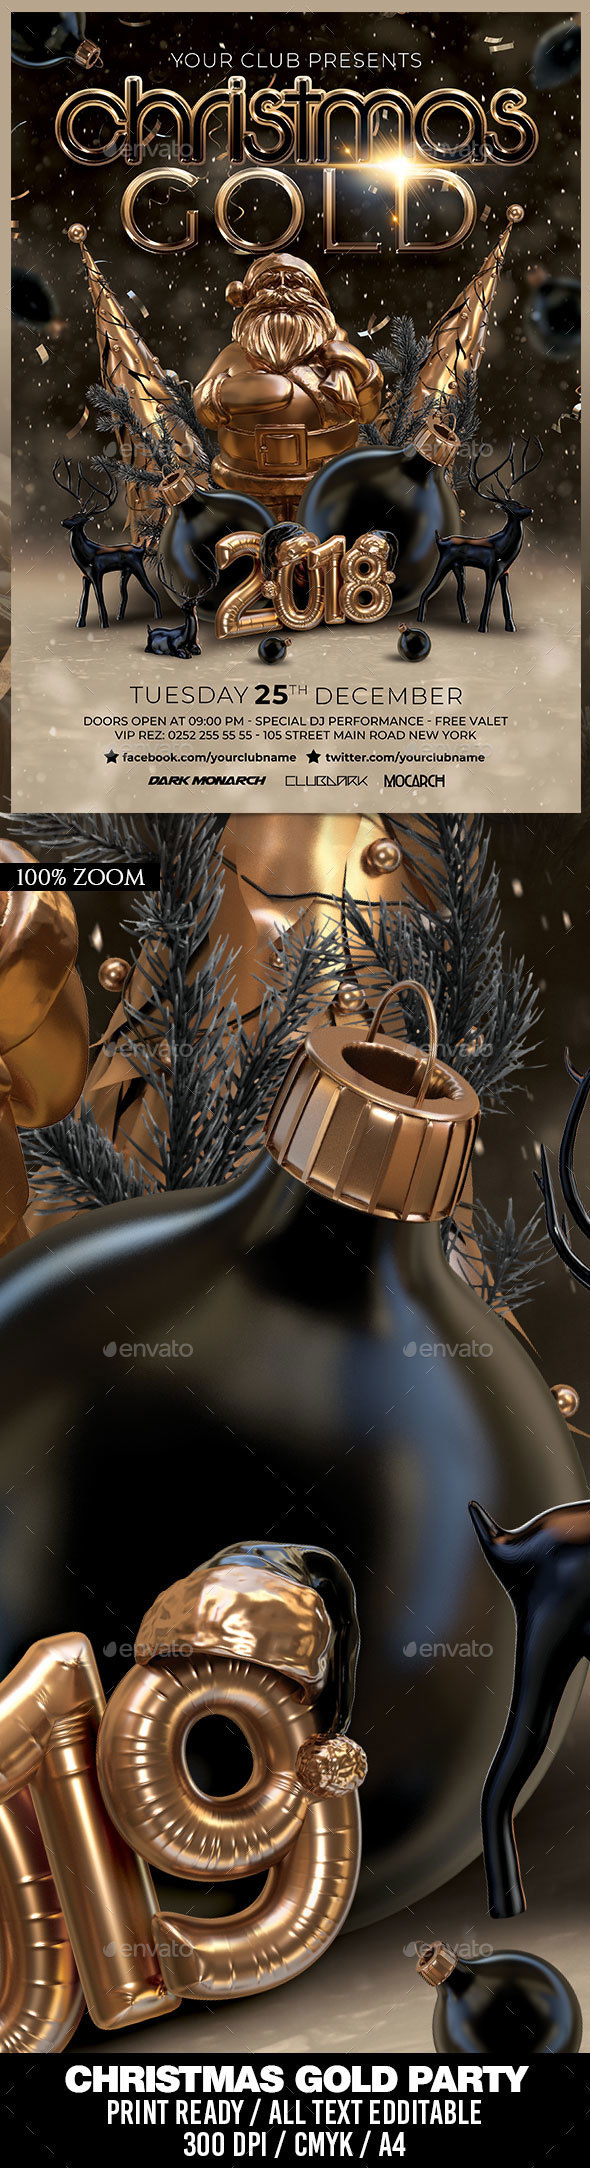 酷炫3D黄金质感的圣诞节活动海报模版PSD下载[PSD]